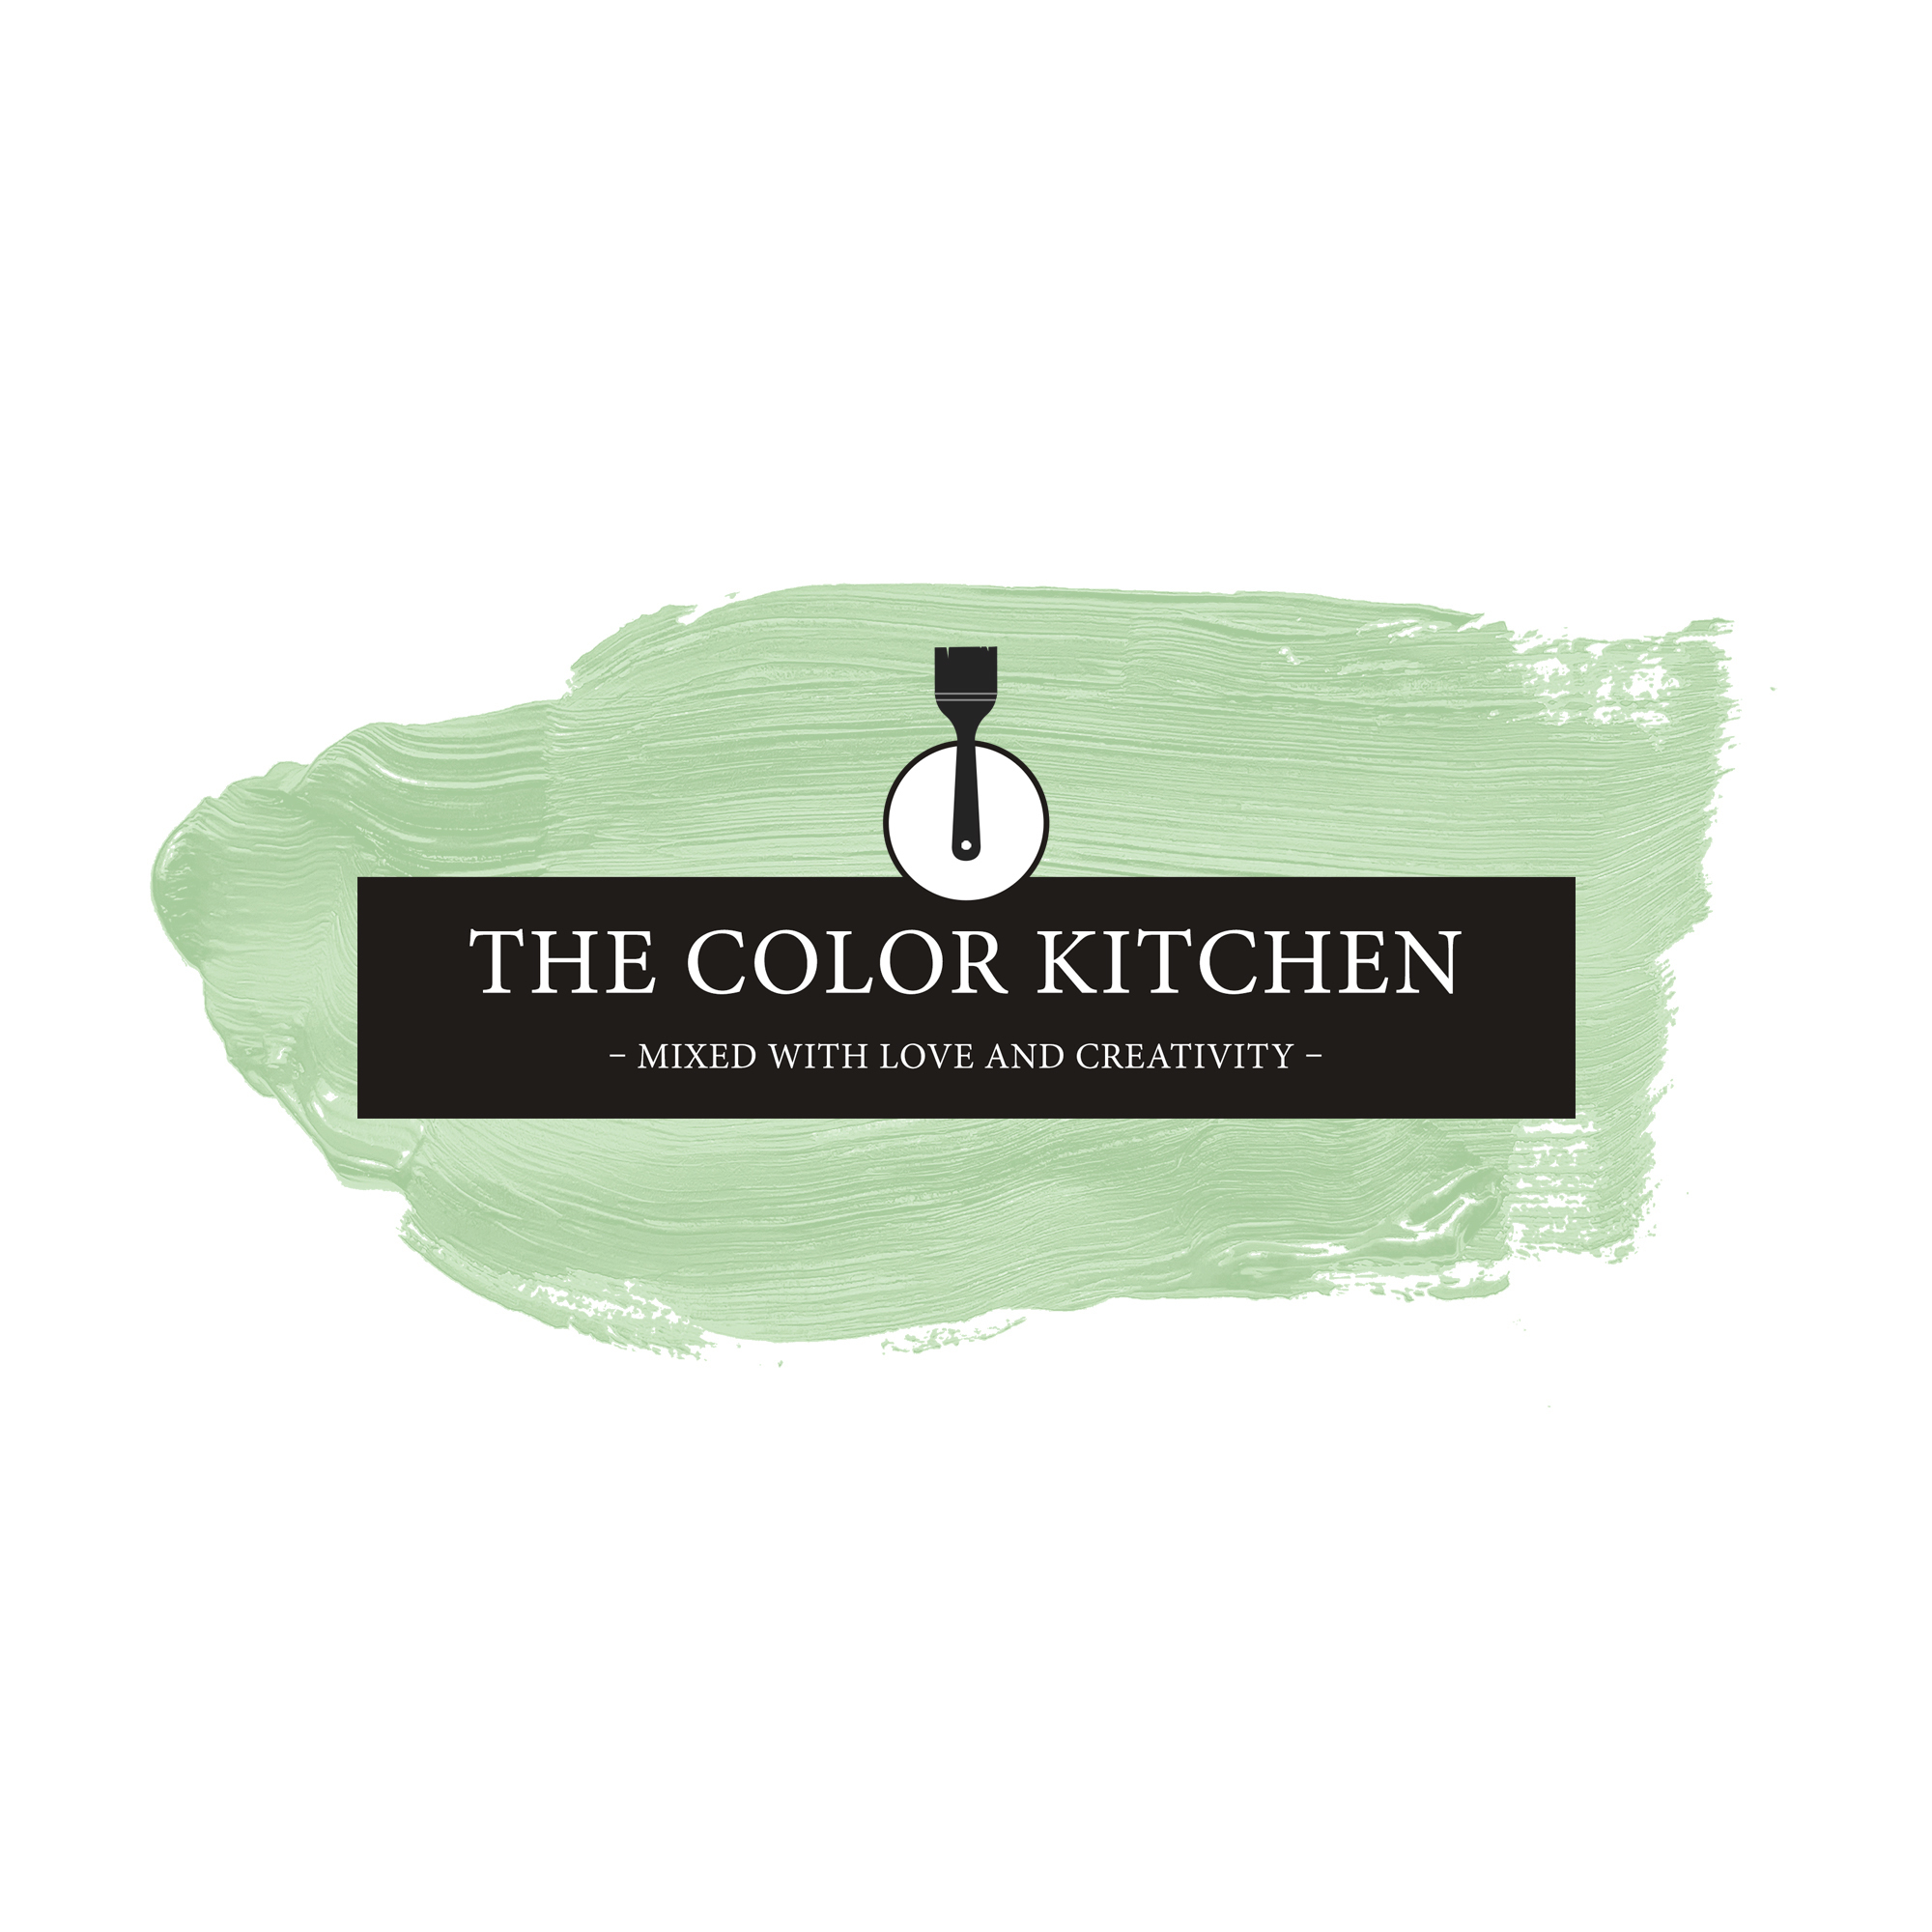 The Color Kitchen Woodruff Cream 2,5 l